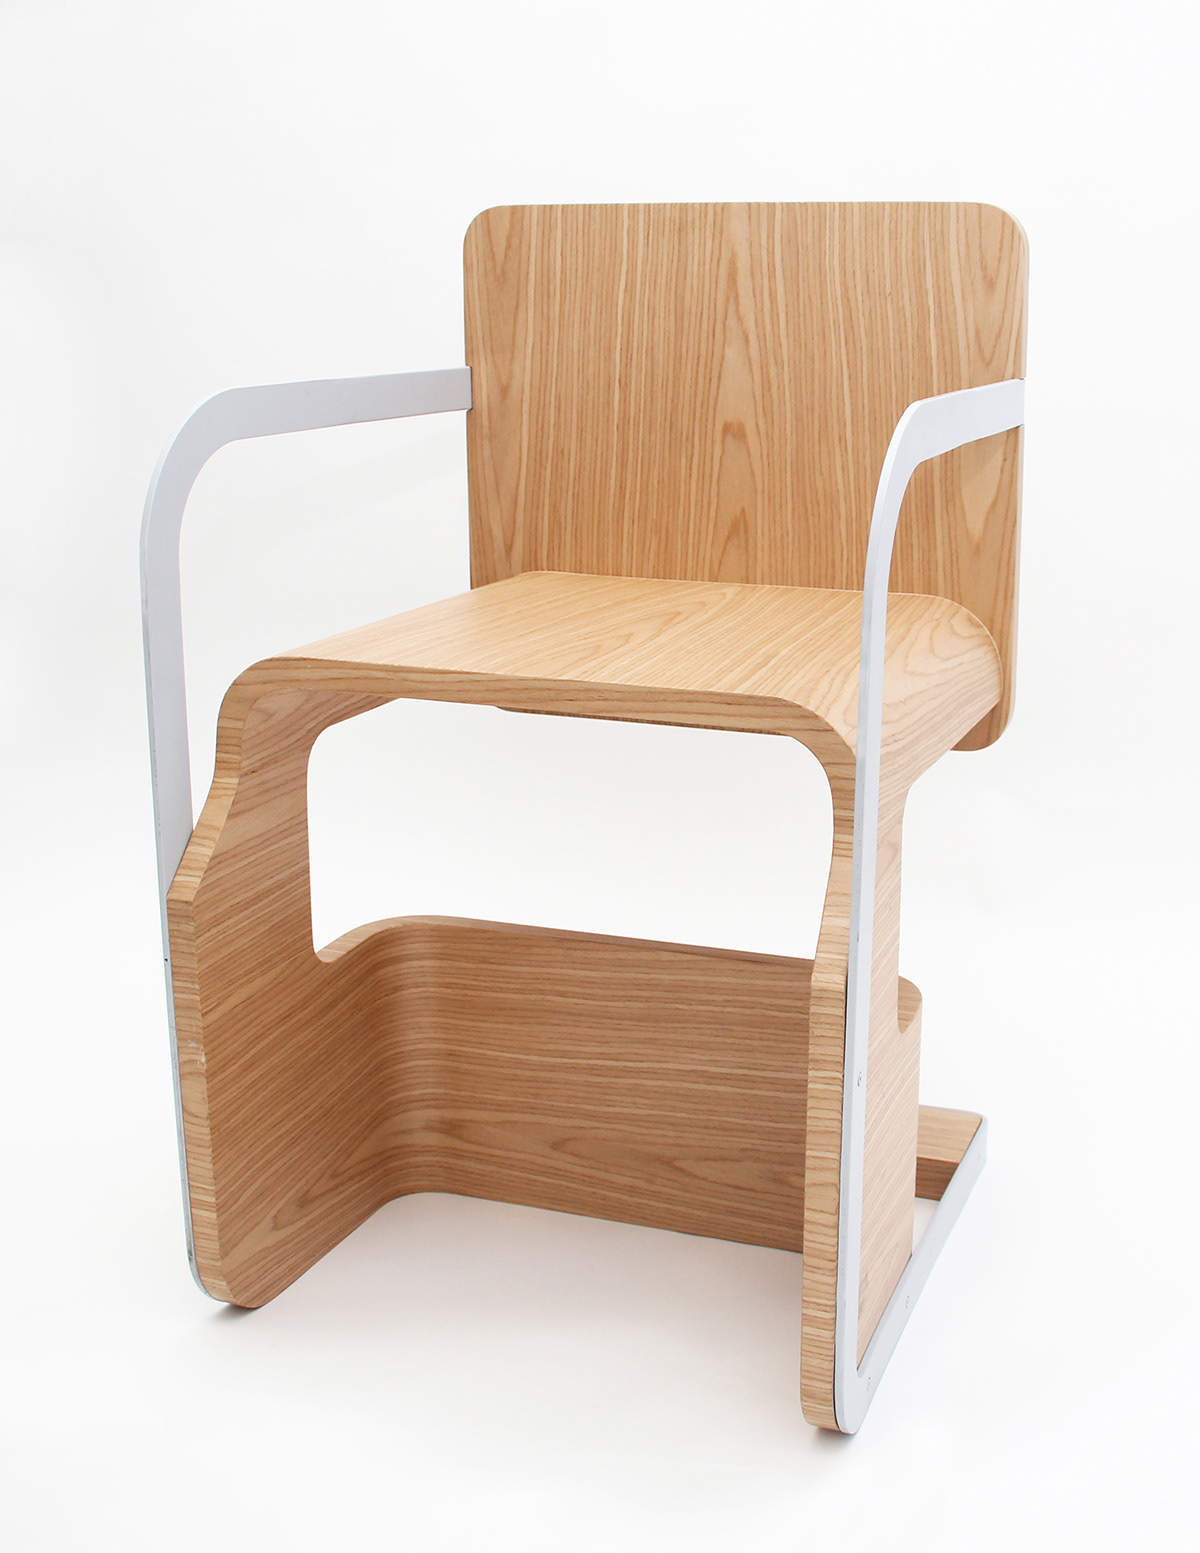 创意折叠椅子设计 - 普象网